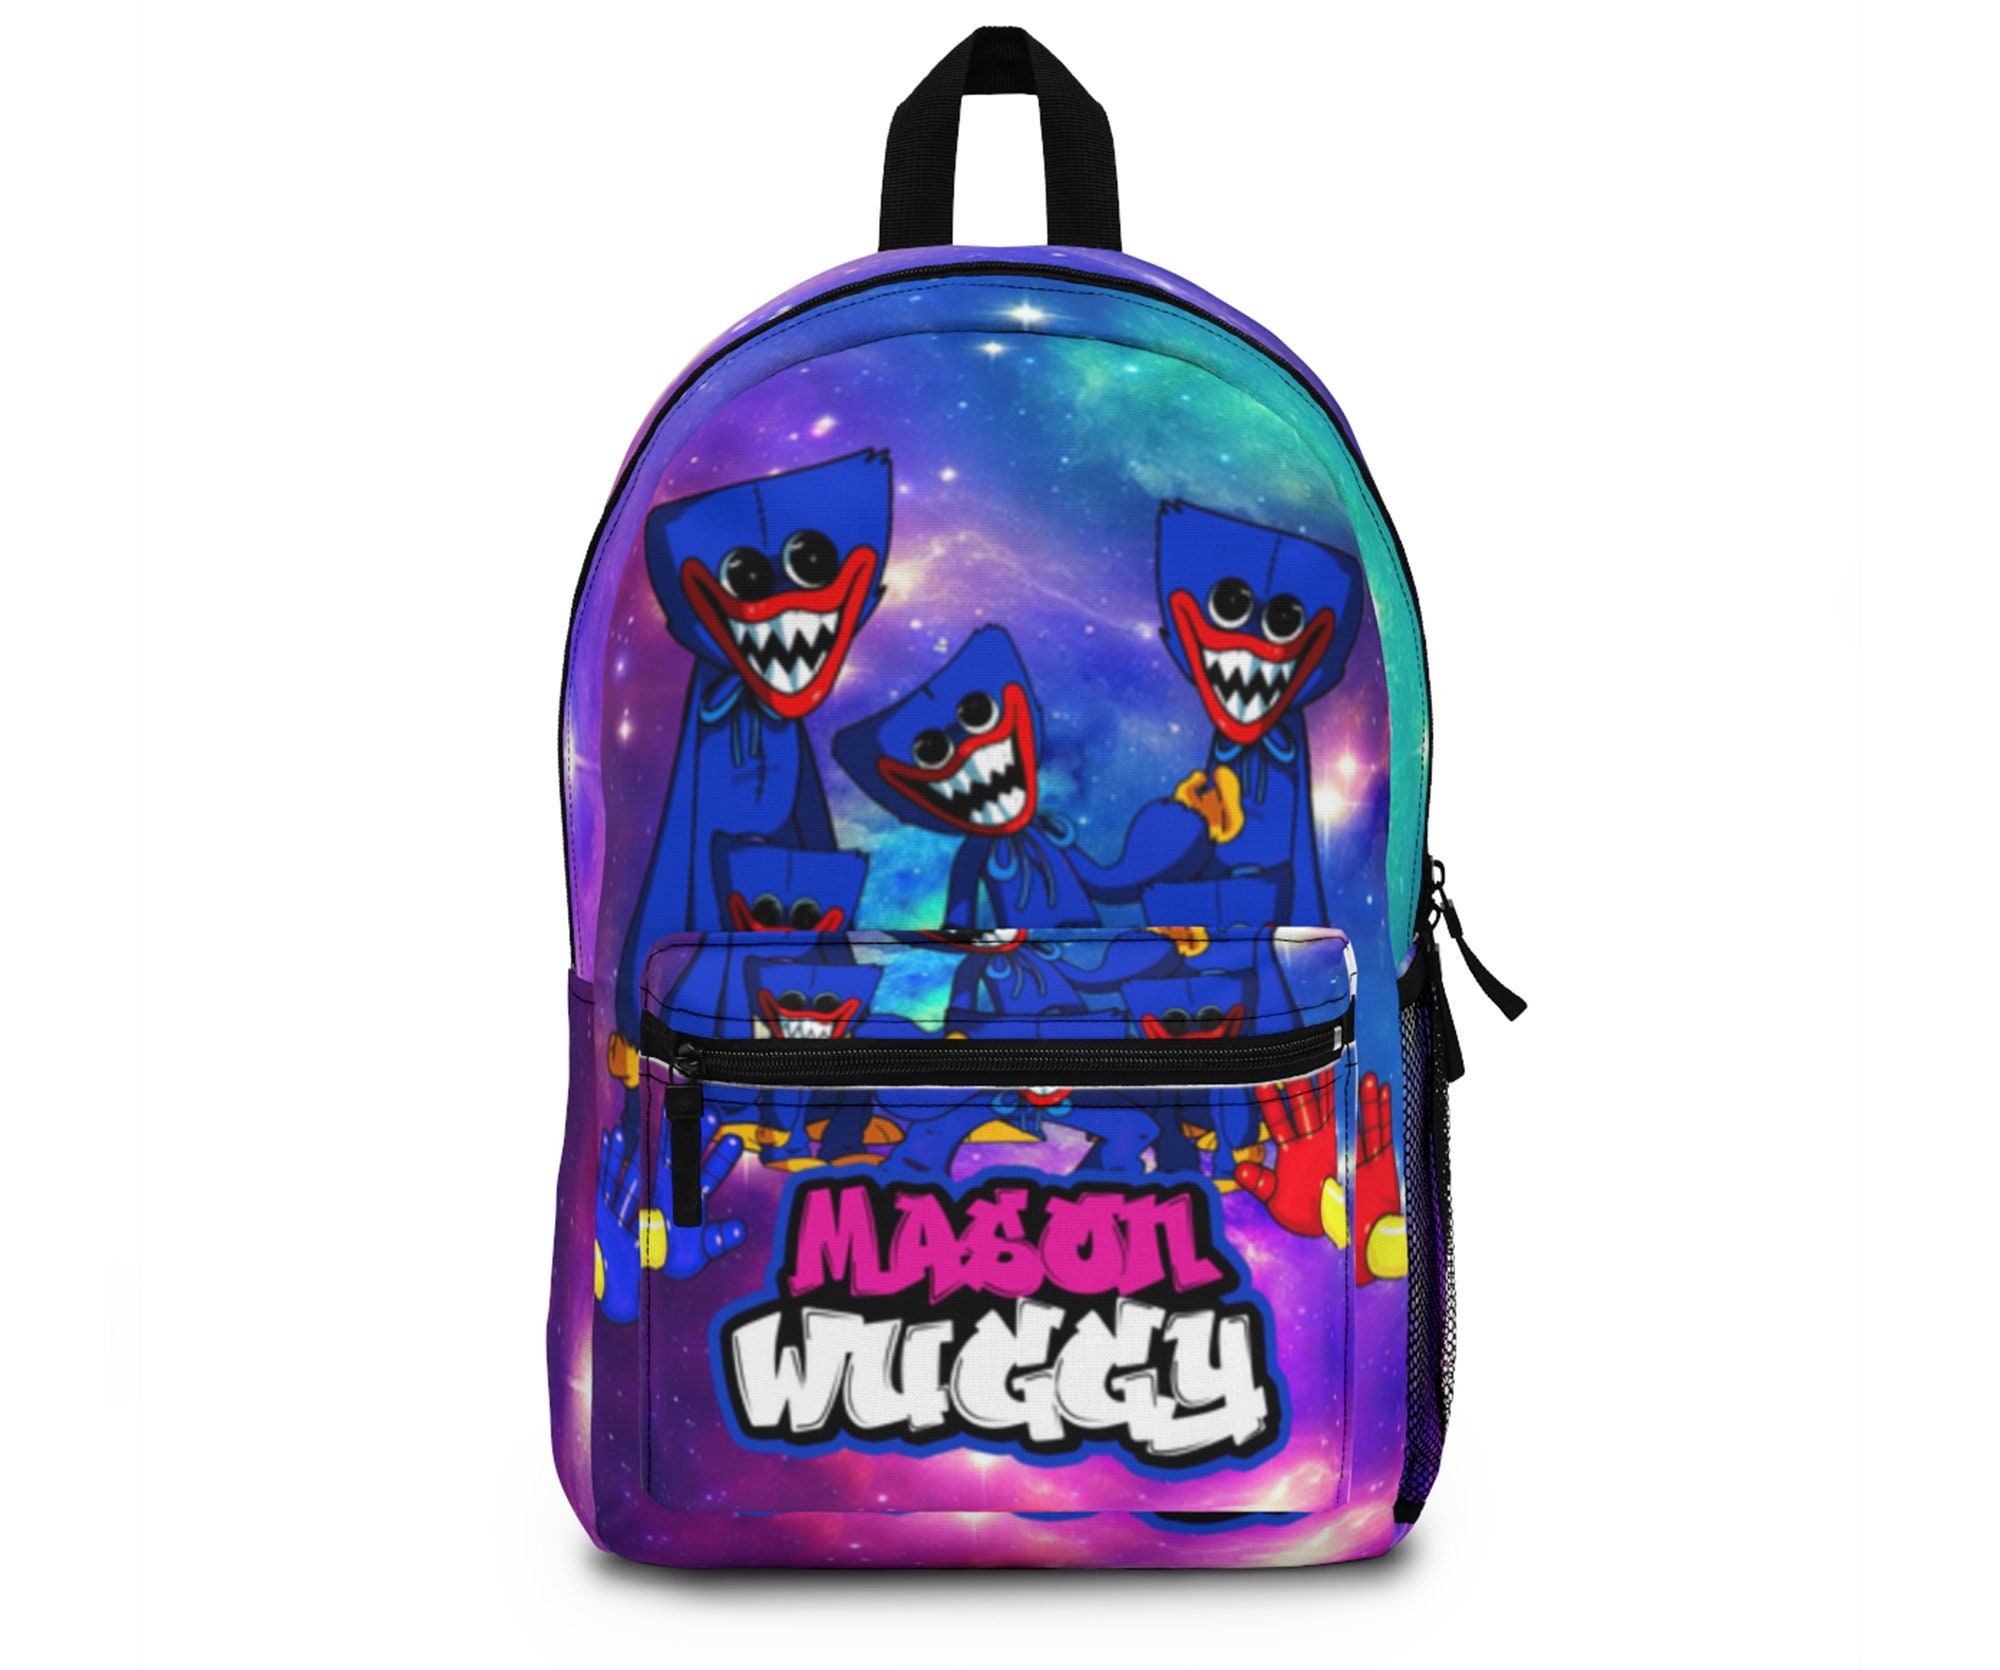 Huggy Wuggy Backpack, Huggy Wuggy School Bag